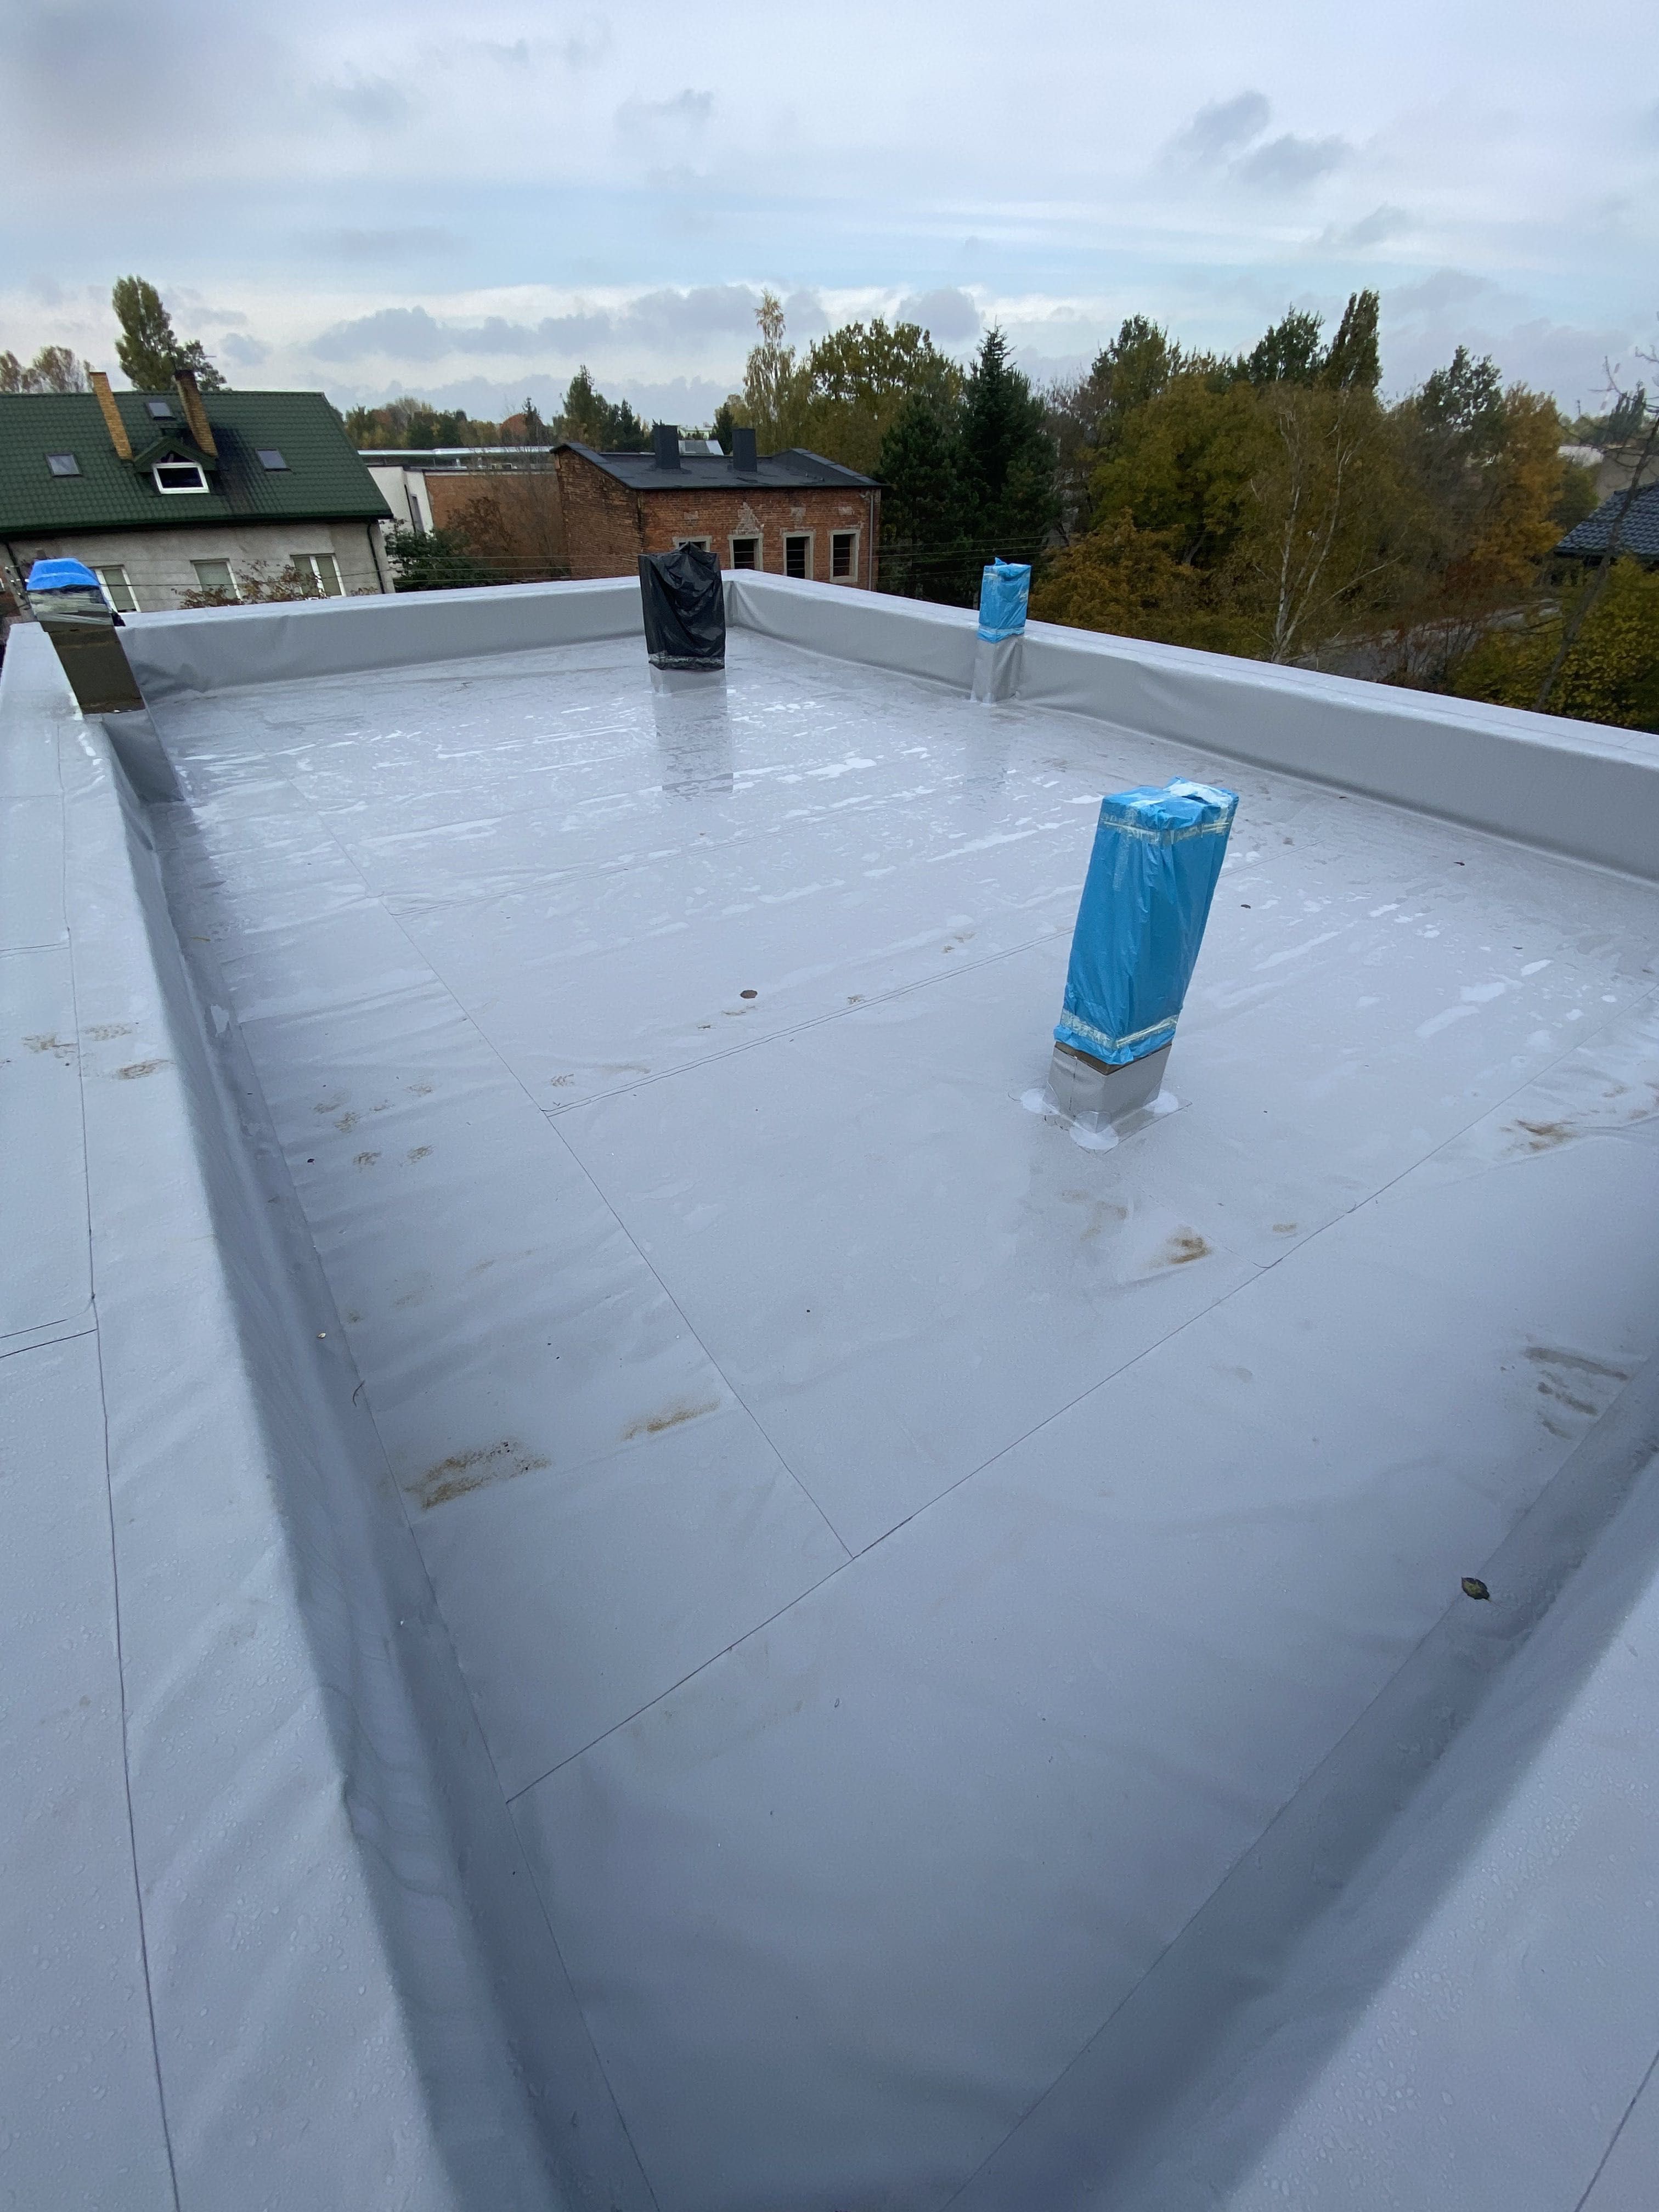 Montaż membrana dachowa PVC ocieplenie dachy płaskie kompleksowo